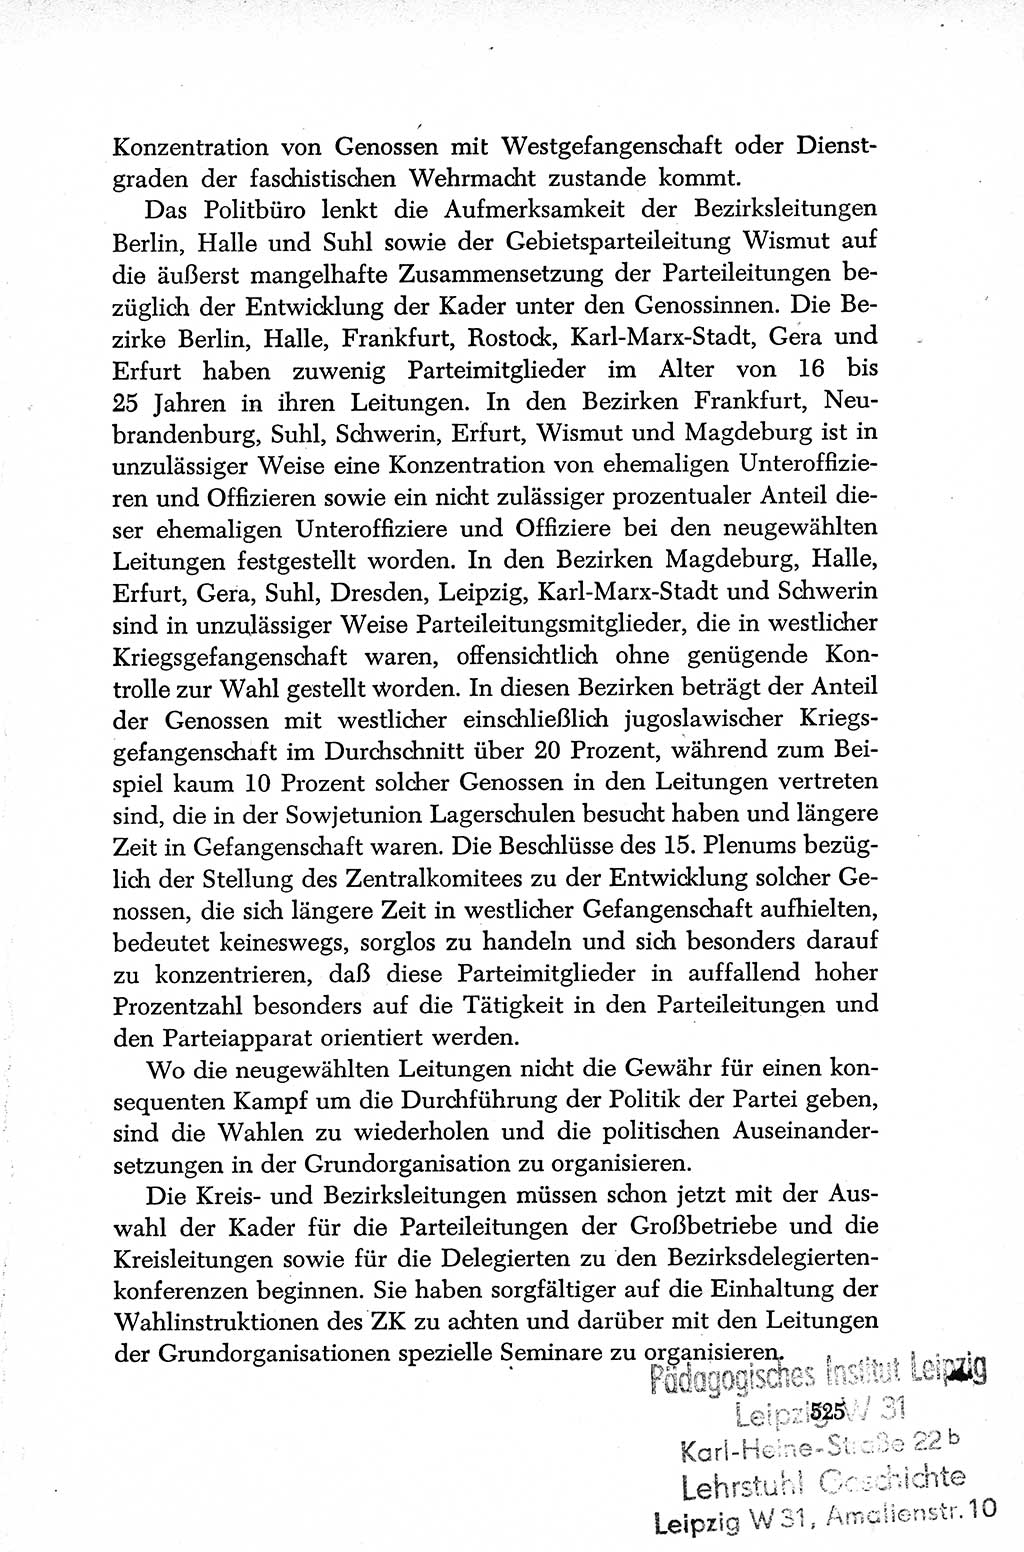 Dokumente der Sozialistischen Einheitspartei Deutschlands (SED) [Deutsche Demokratische Republik (DDR)] 1952-1953, Seite 525 (Dok. SED DDR 1952-1953, S. 525)